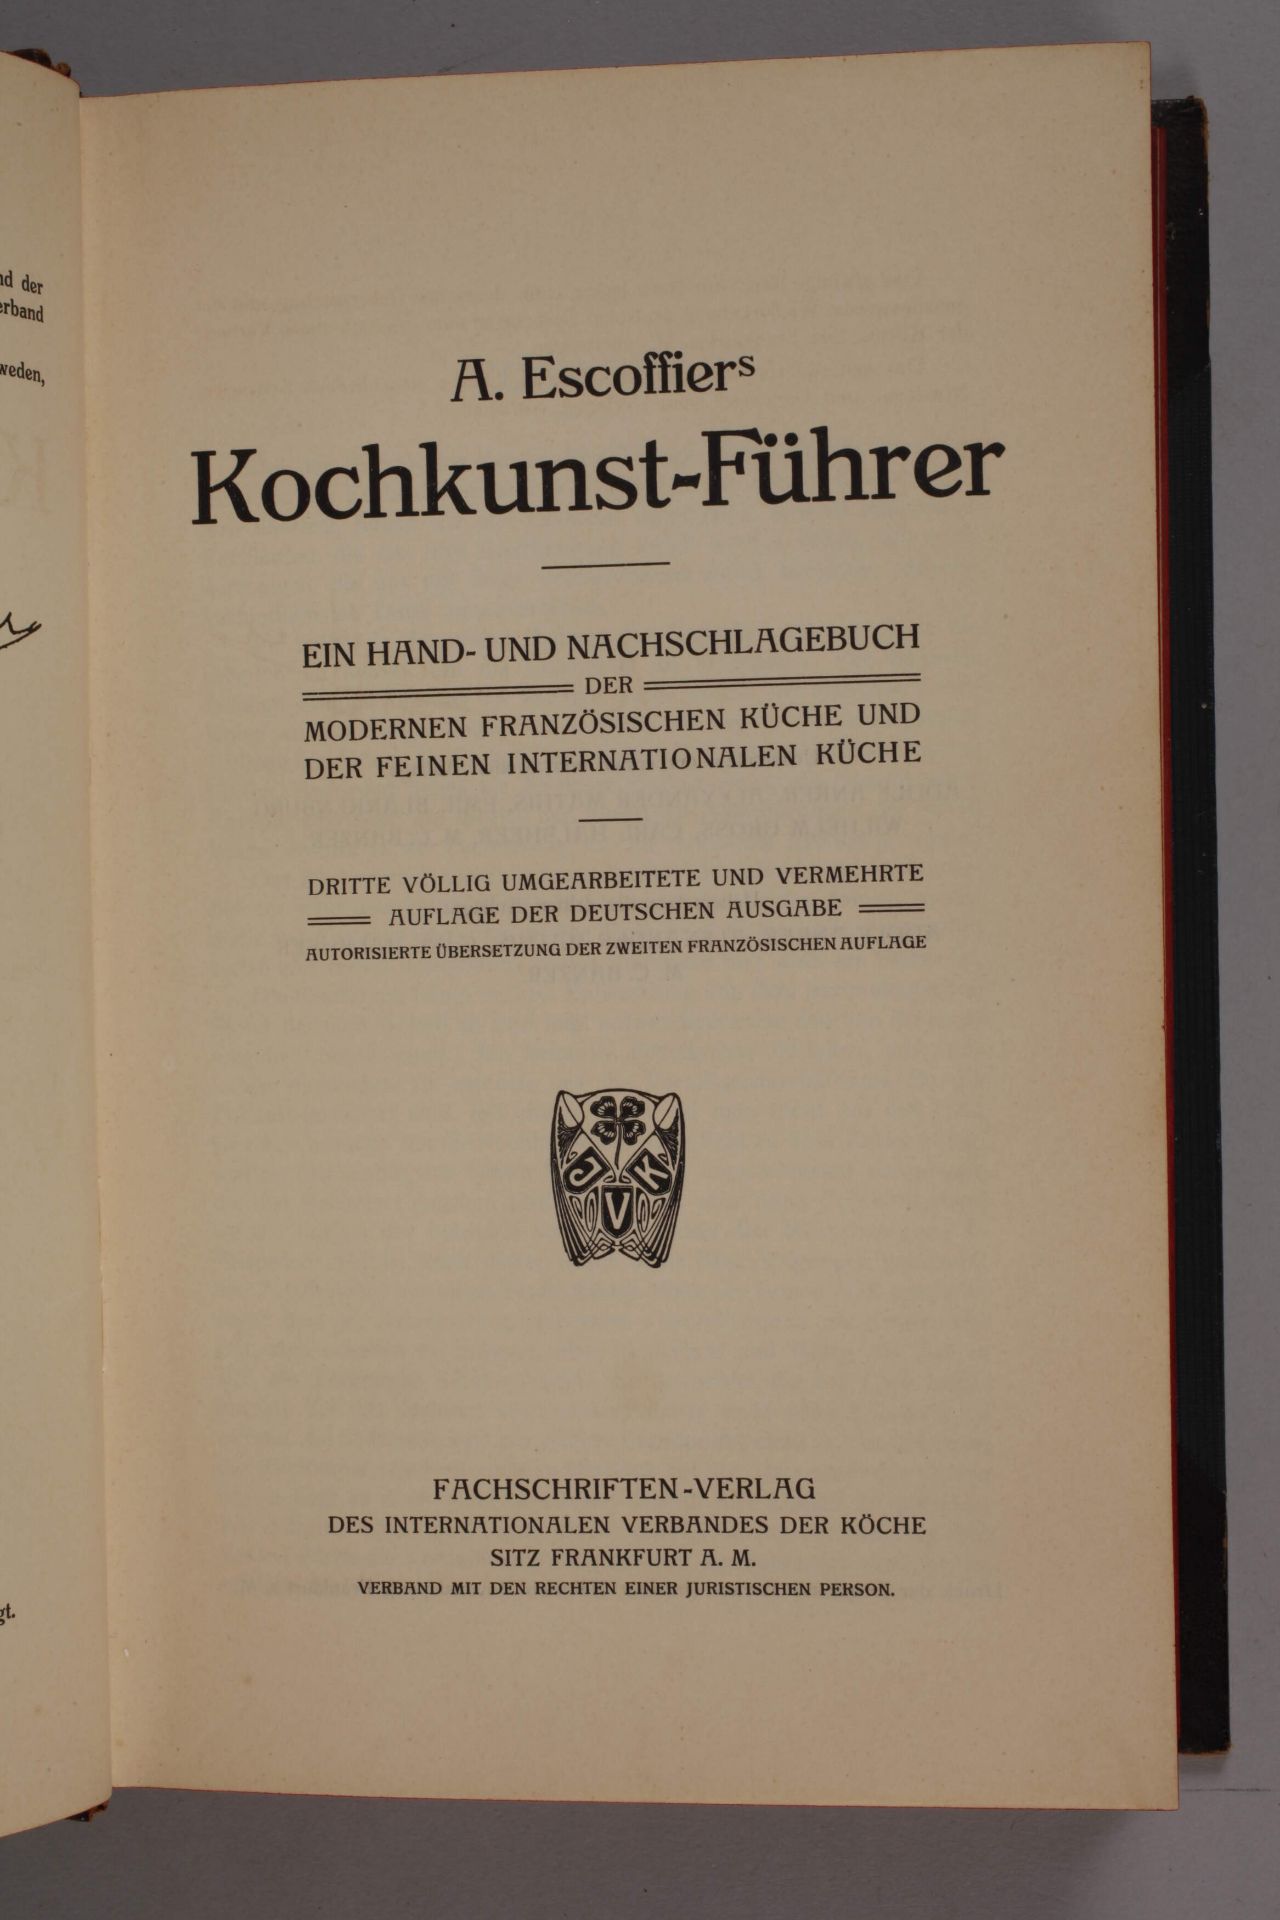 A. Escoffier's Kochkunst-Führer - Image 2 of 4